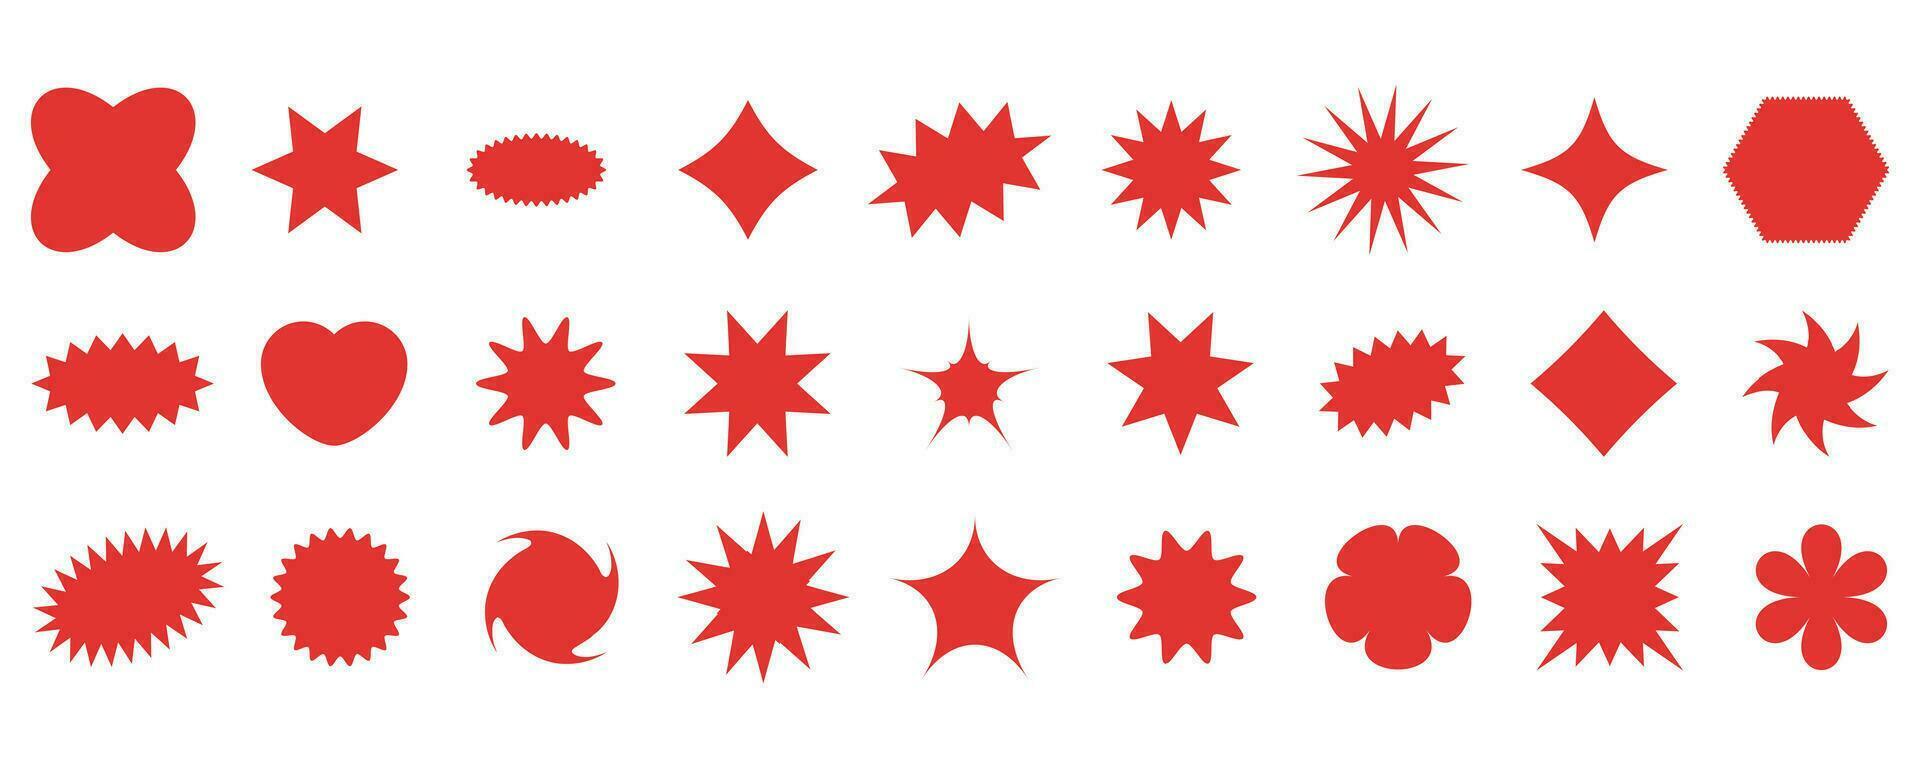 conjunto de rojo Starburst pegatinas diseño elementos para promoción publicidad campaña. vector ilustración